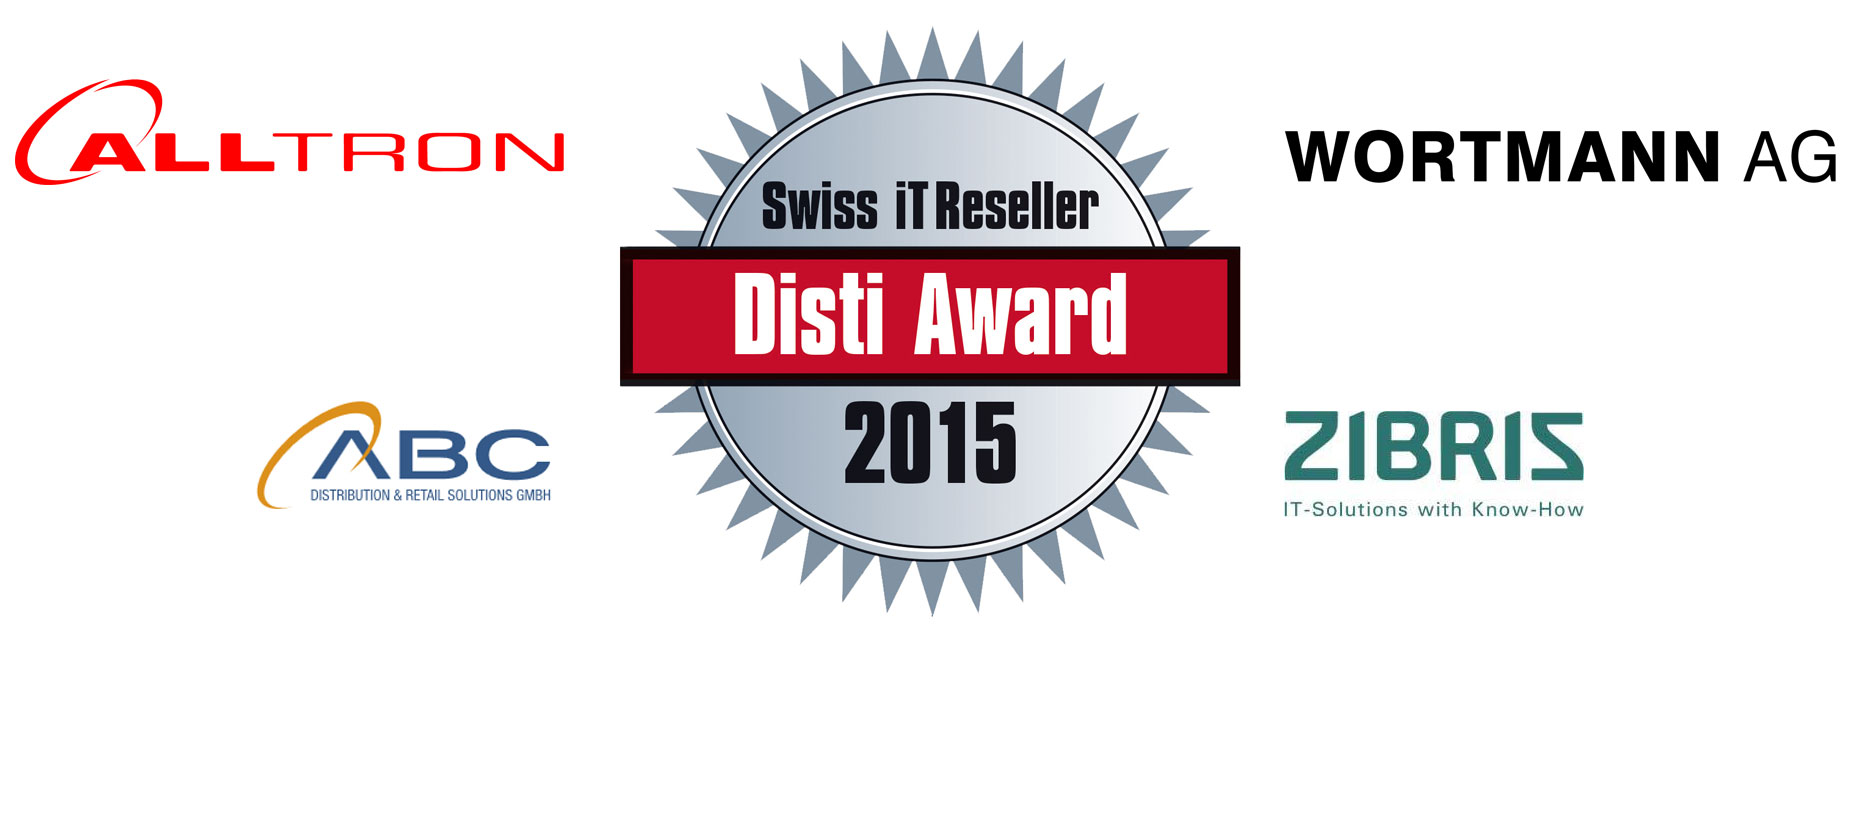 Alltron ABC Distribution Zibris brund Wortmann gewinnen Disti Award 2015 - Bild 1